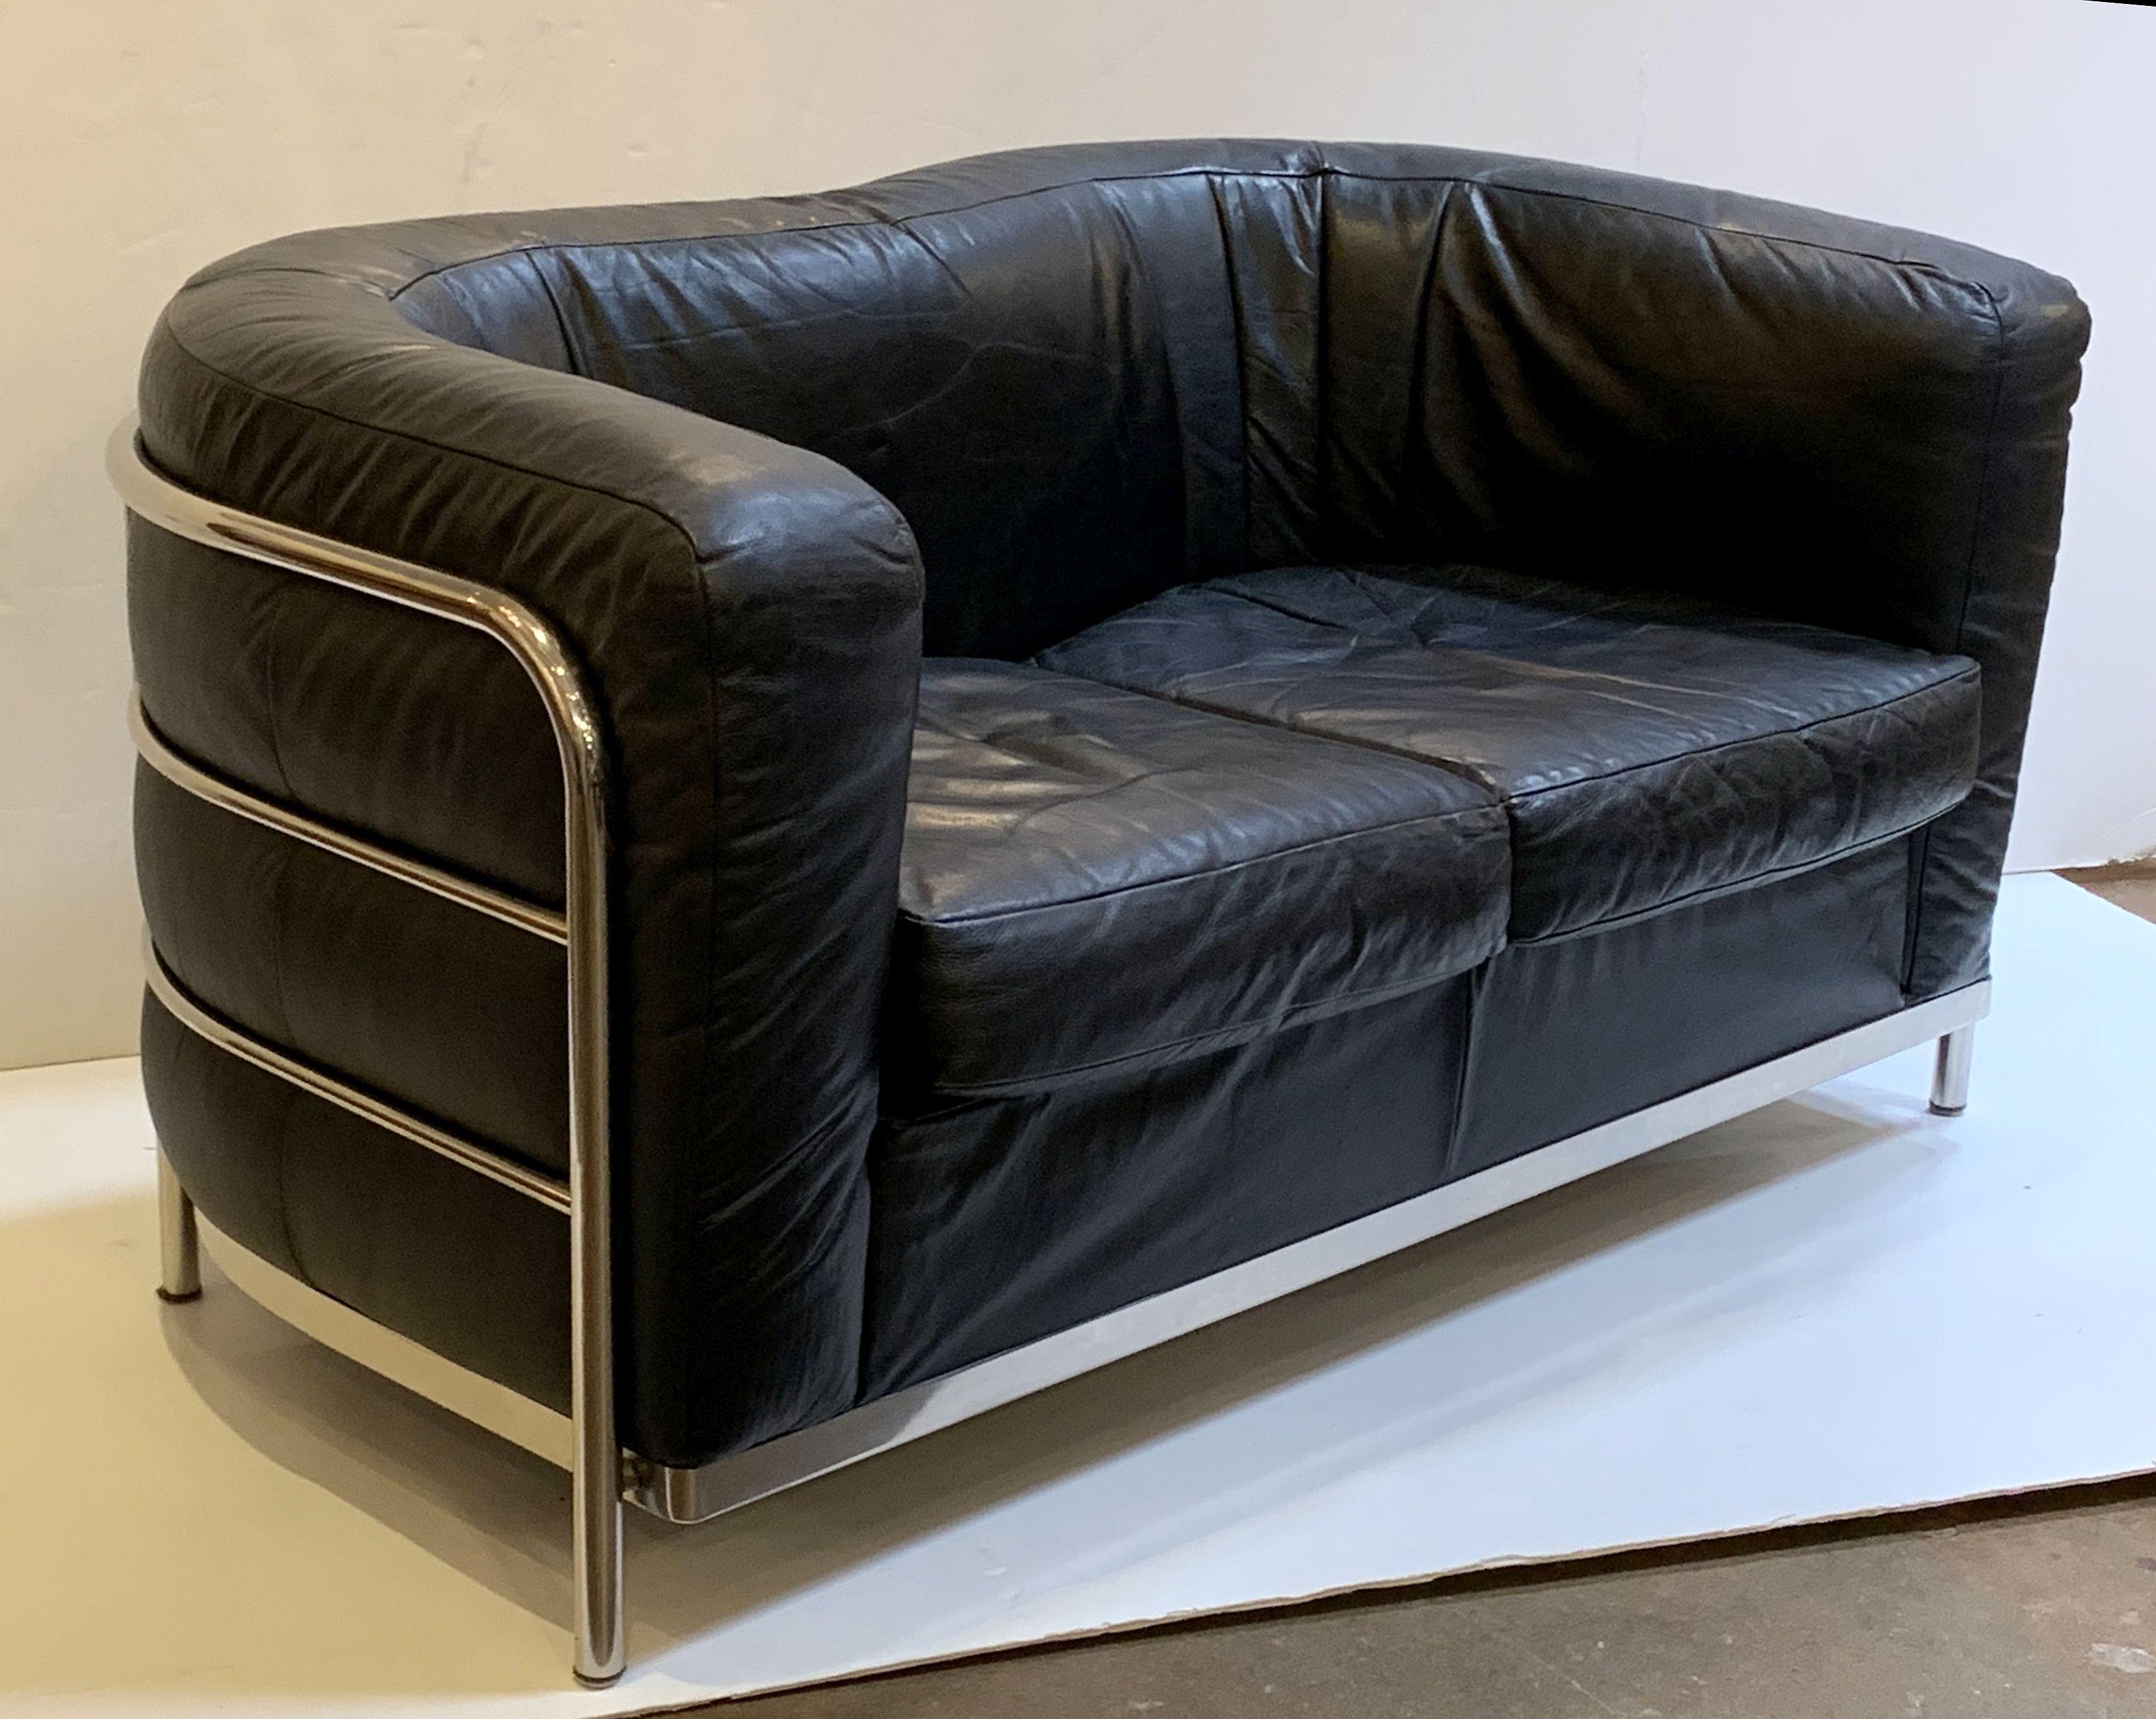 paolo leather sofa